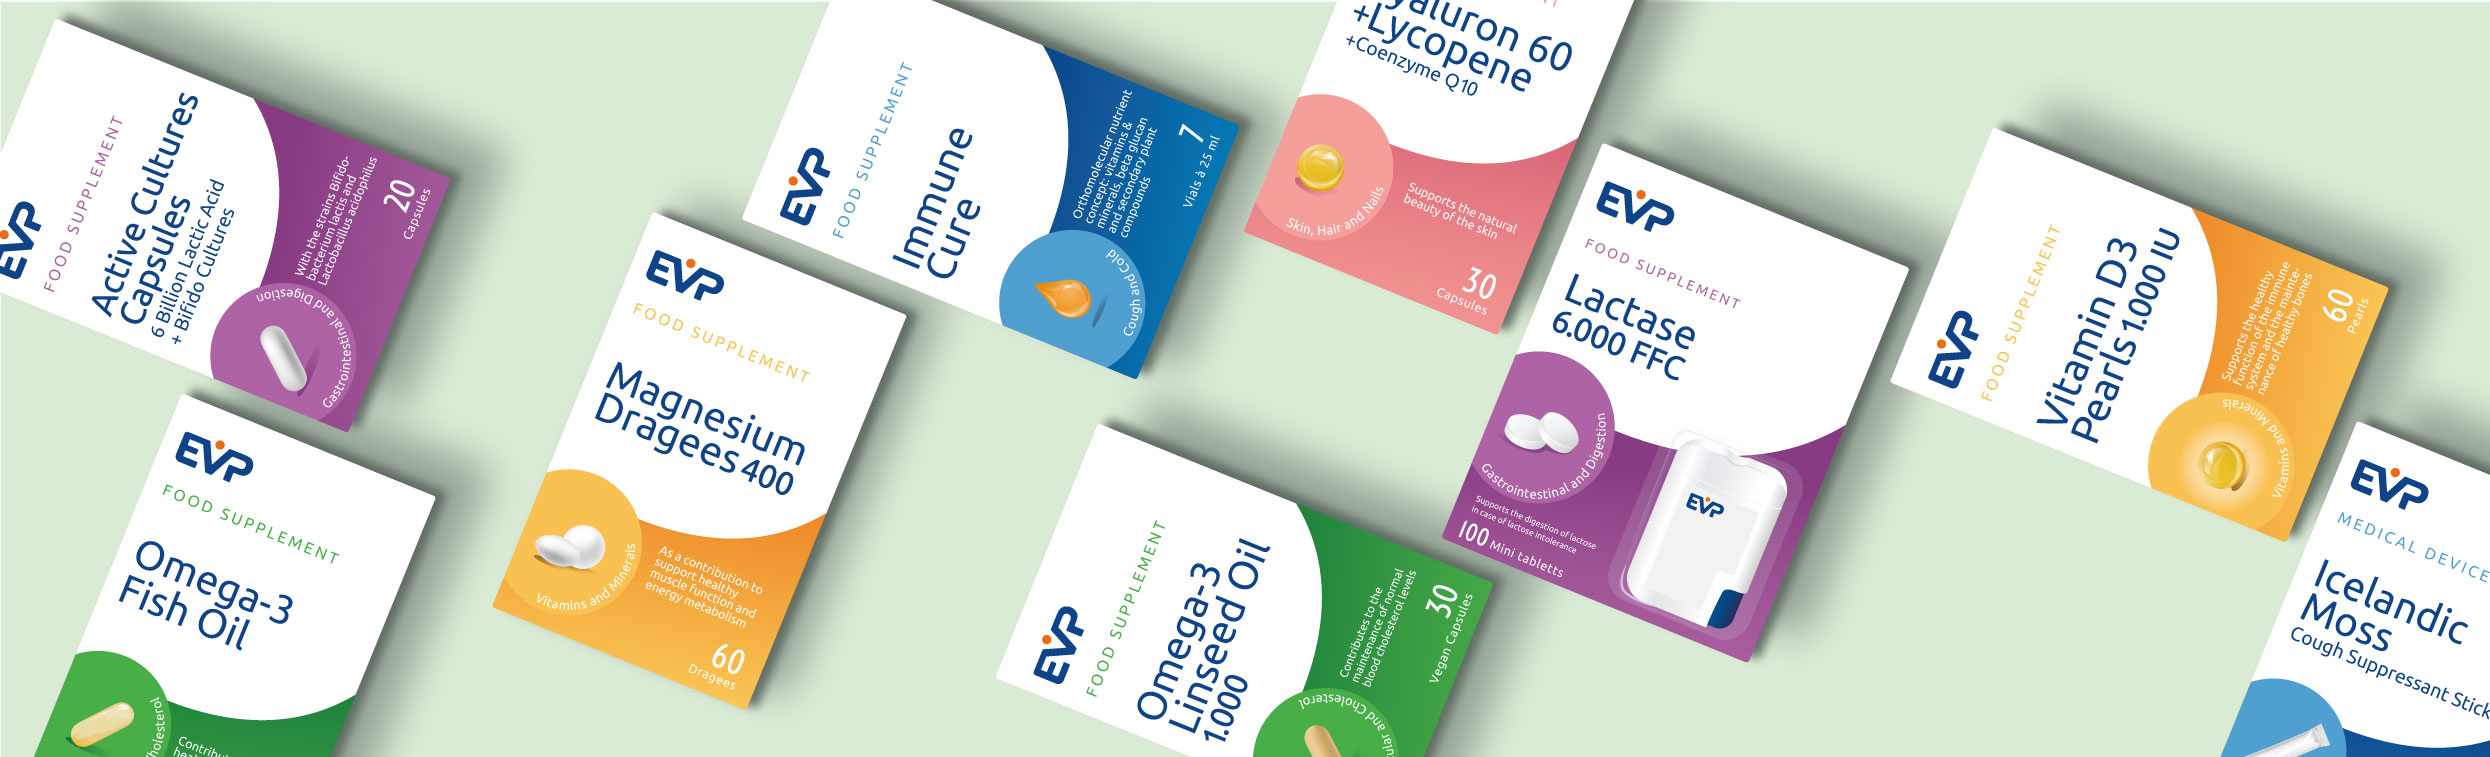 Bildcollage zeigt Produktvielfalt der EVP - Euro Vital Pharma